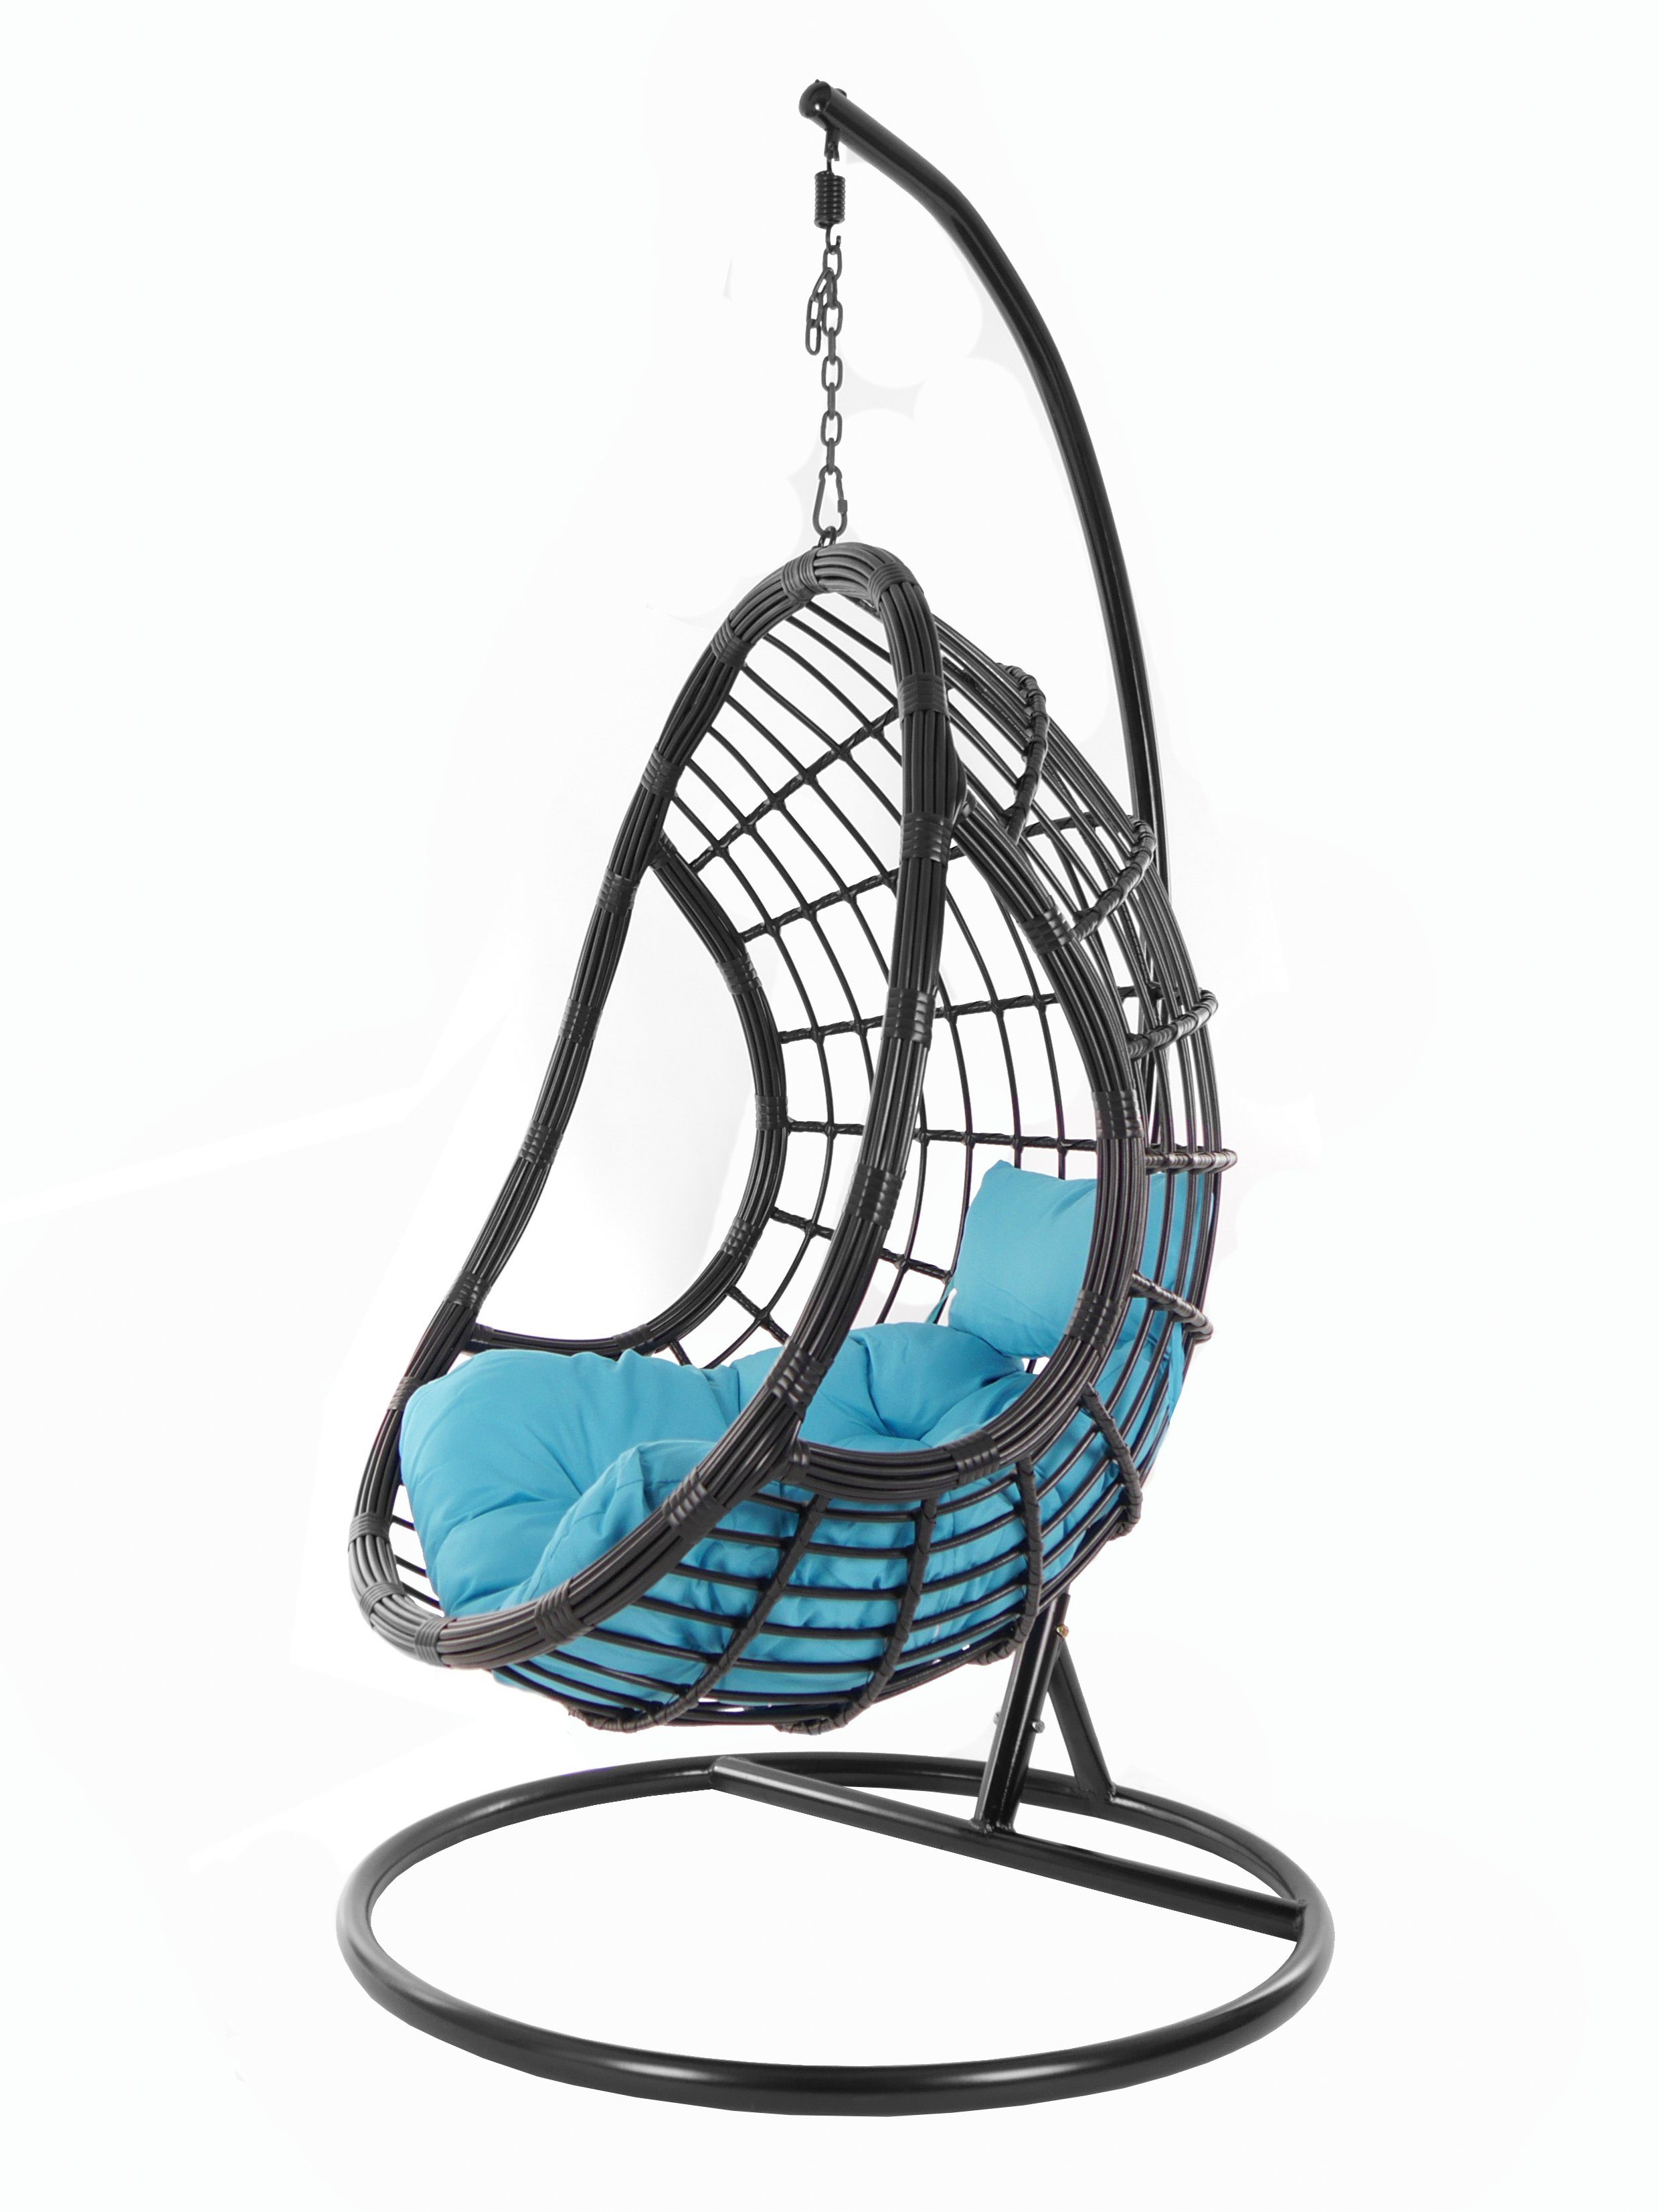 KIDEO Hängesessel PALMANOVA black, Swing Kissen, schwarz, Gestell hellblau Chair, (5050 Schwebesessel, Loungemöbel, edles Design skyblue) und mit Hängesessel